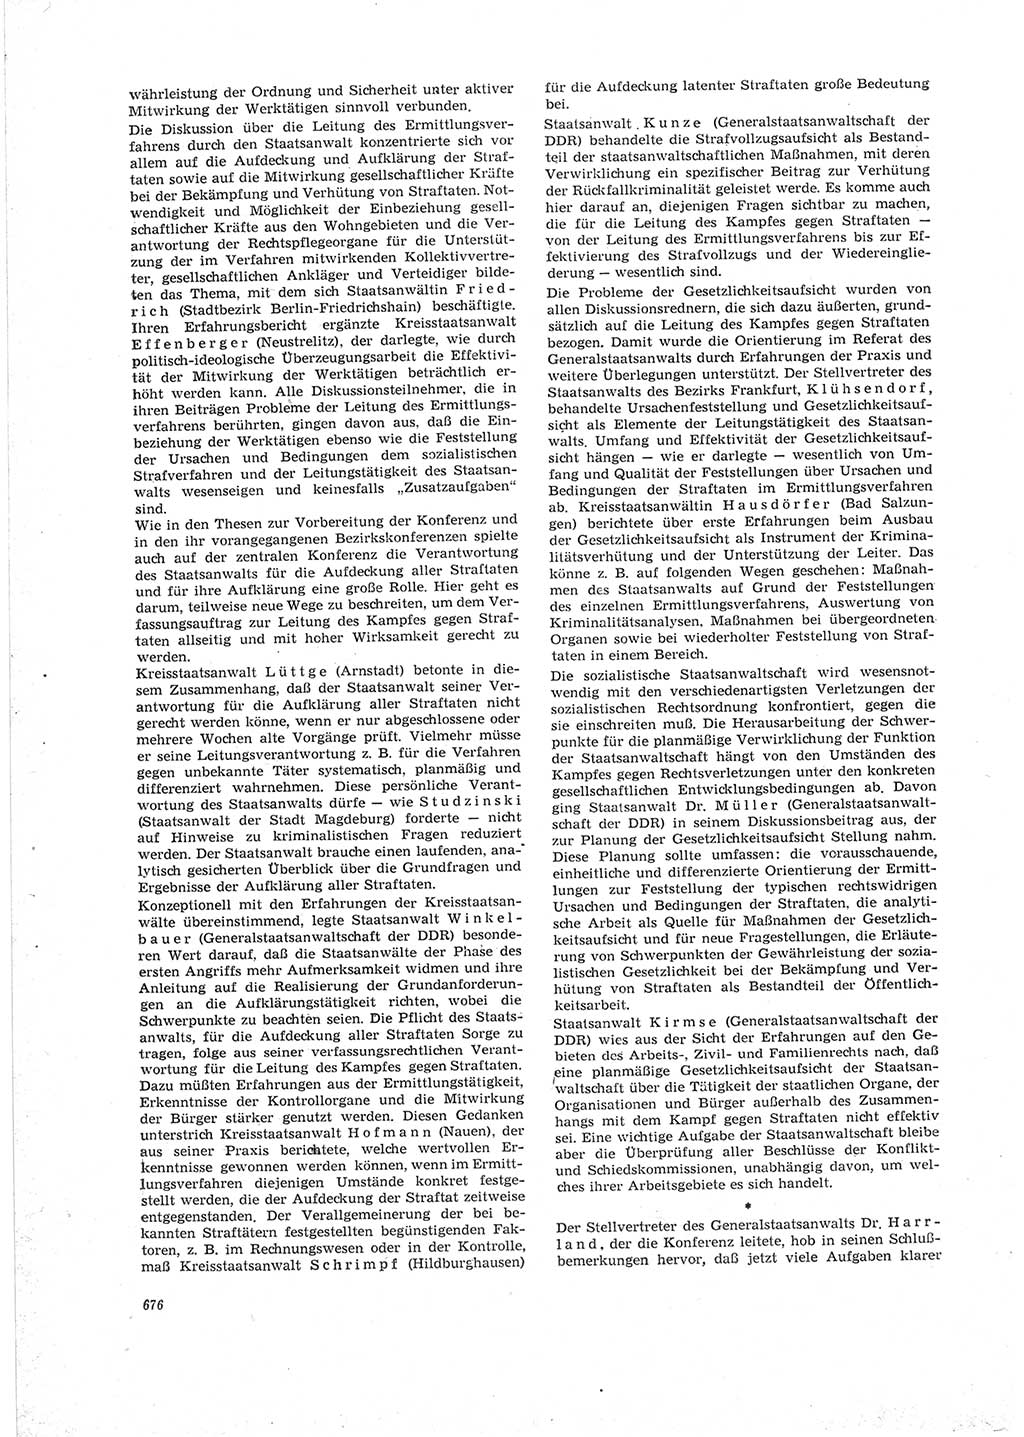 Neue Justiz (NJ), Zeitschrift für Recht und Rechtswissenschaft [Deutsche Demokratische Republik (DDR)], 23. Jahrgang 1969, Seite 676 (NJ DDR 1969, S. 676)